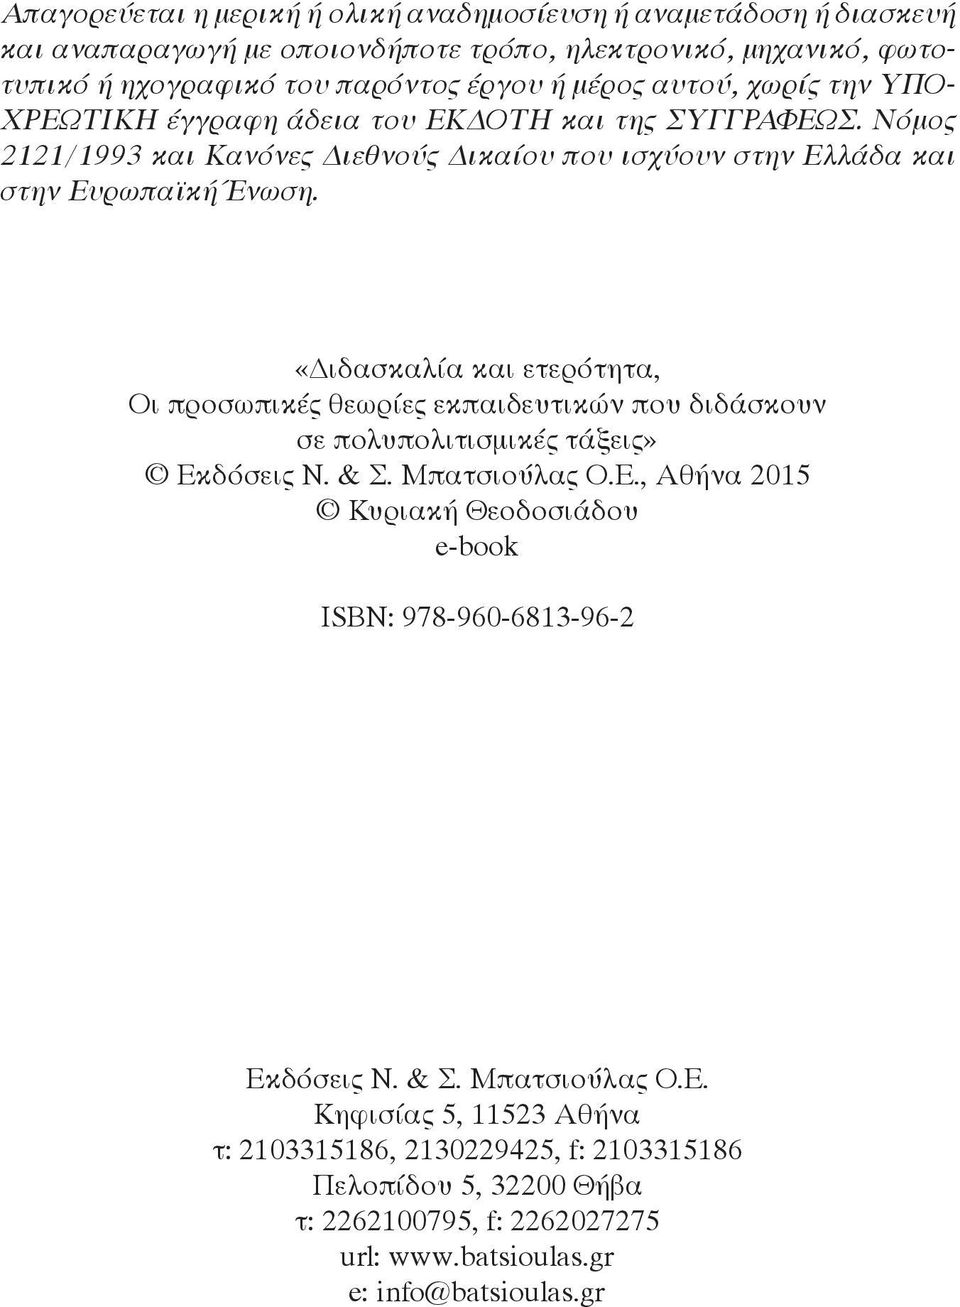 «ιδασκαλία και ετερότητα, Oι προσωπικές θεωρίες εκπαιδευτικών που διδάσκουν σε πολυπολιτισμικές τάξεις» Εκδόσεις Ν. & Σ. Μπατσιούλας Ο.Ε., Αθήνα 2015 Κυριακή Θεοδοσιάδου e-book ISBN: 978-960-6813-96-2 Εκδόσεις Ν.